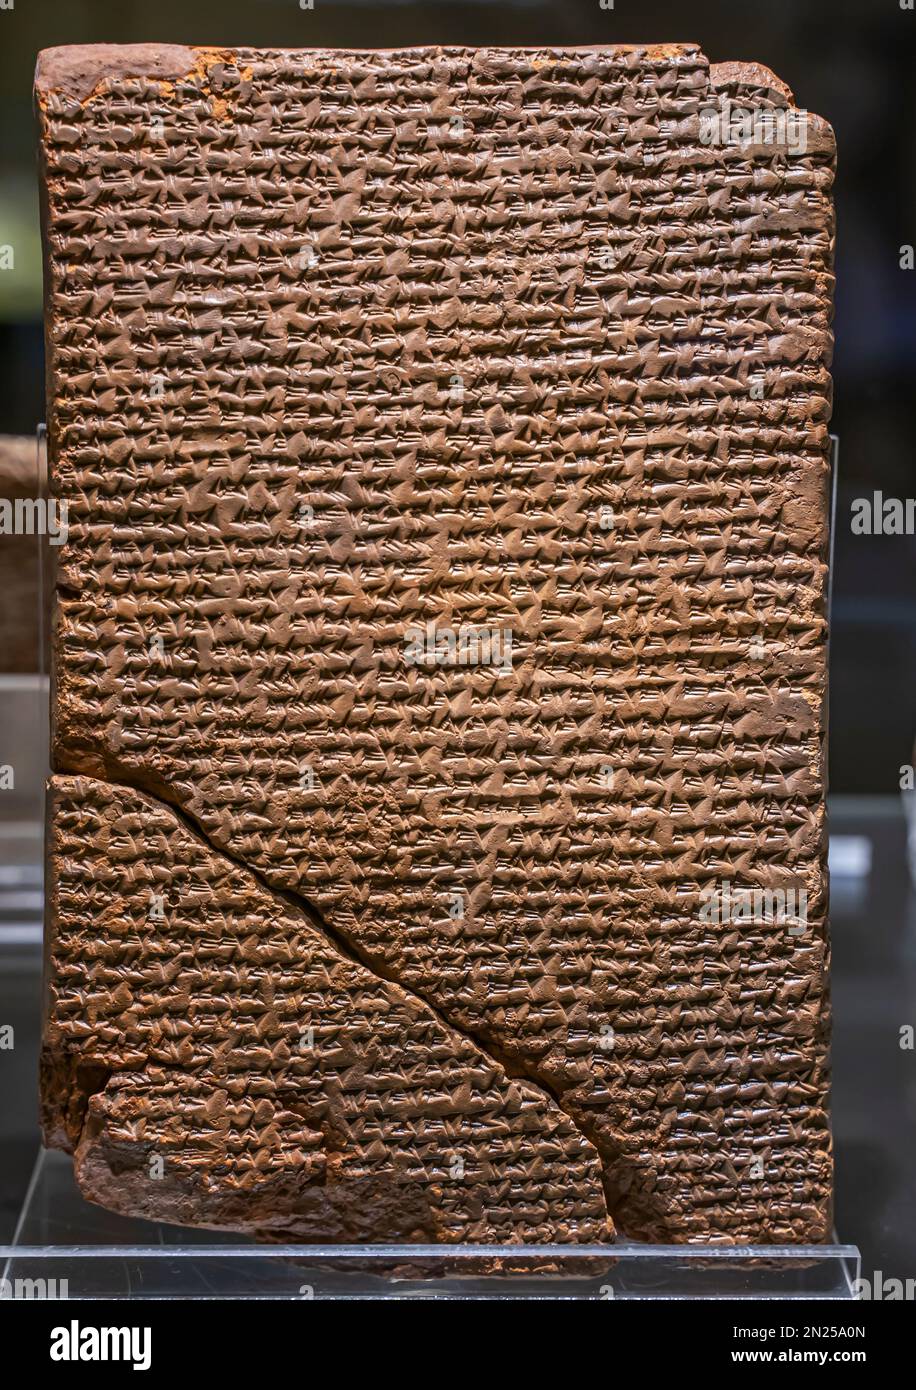 Tablette mit Jahreseinnahme von König Hattusili I. Boğazköy. Terra Cotta. 17. Jahrhundert v. Chr. Сuneiform Schriftgrafik. Stockfoto